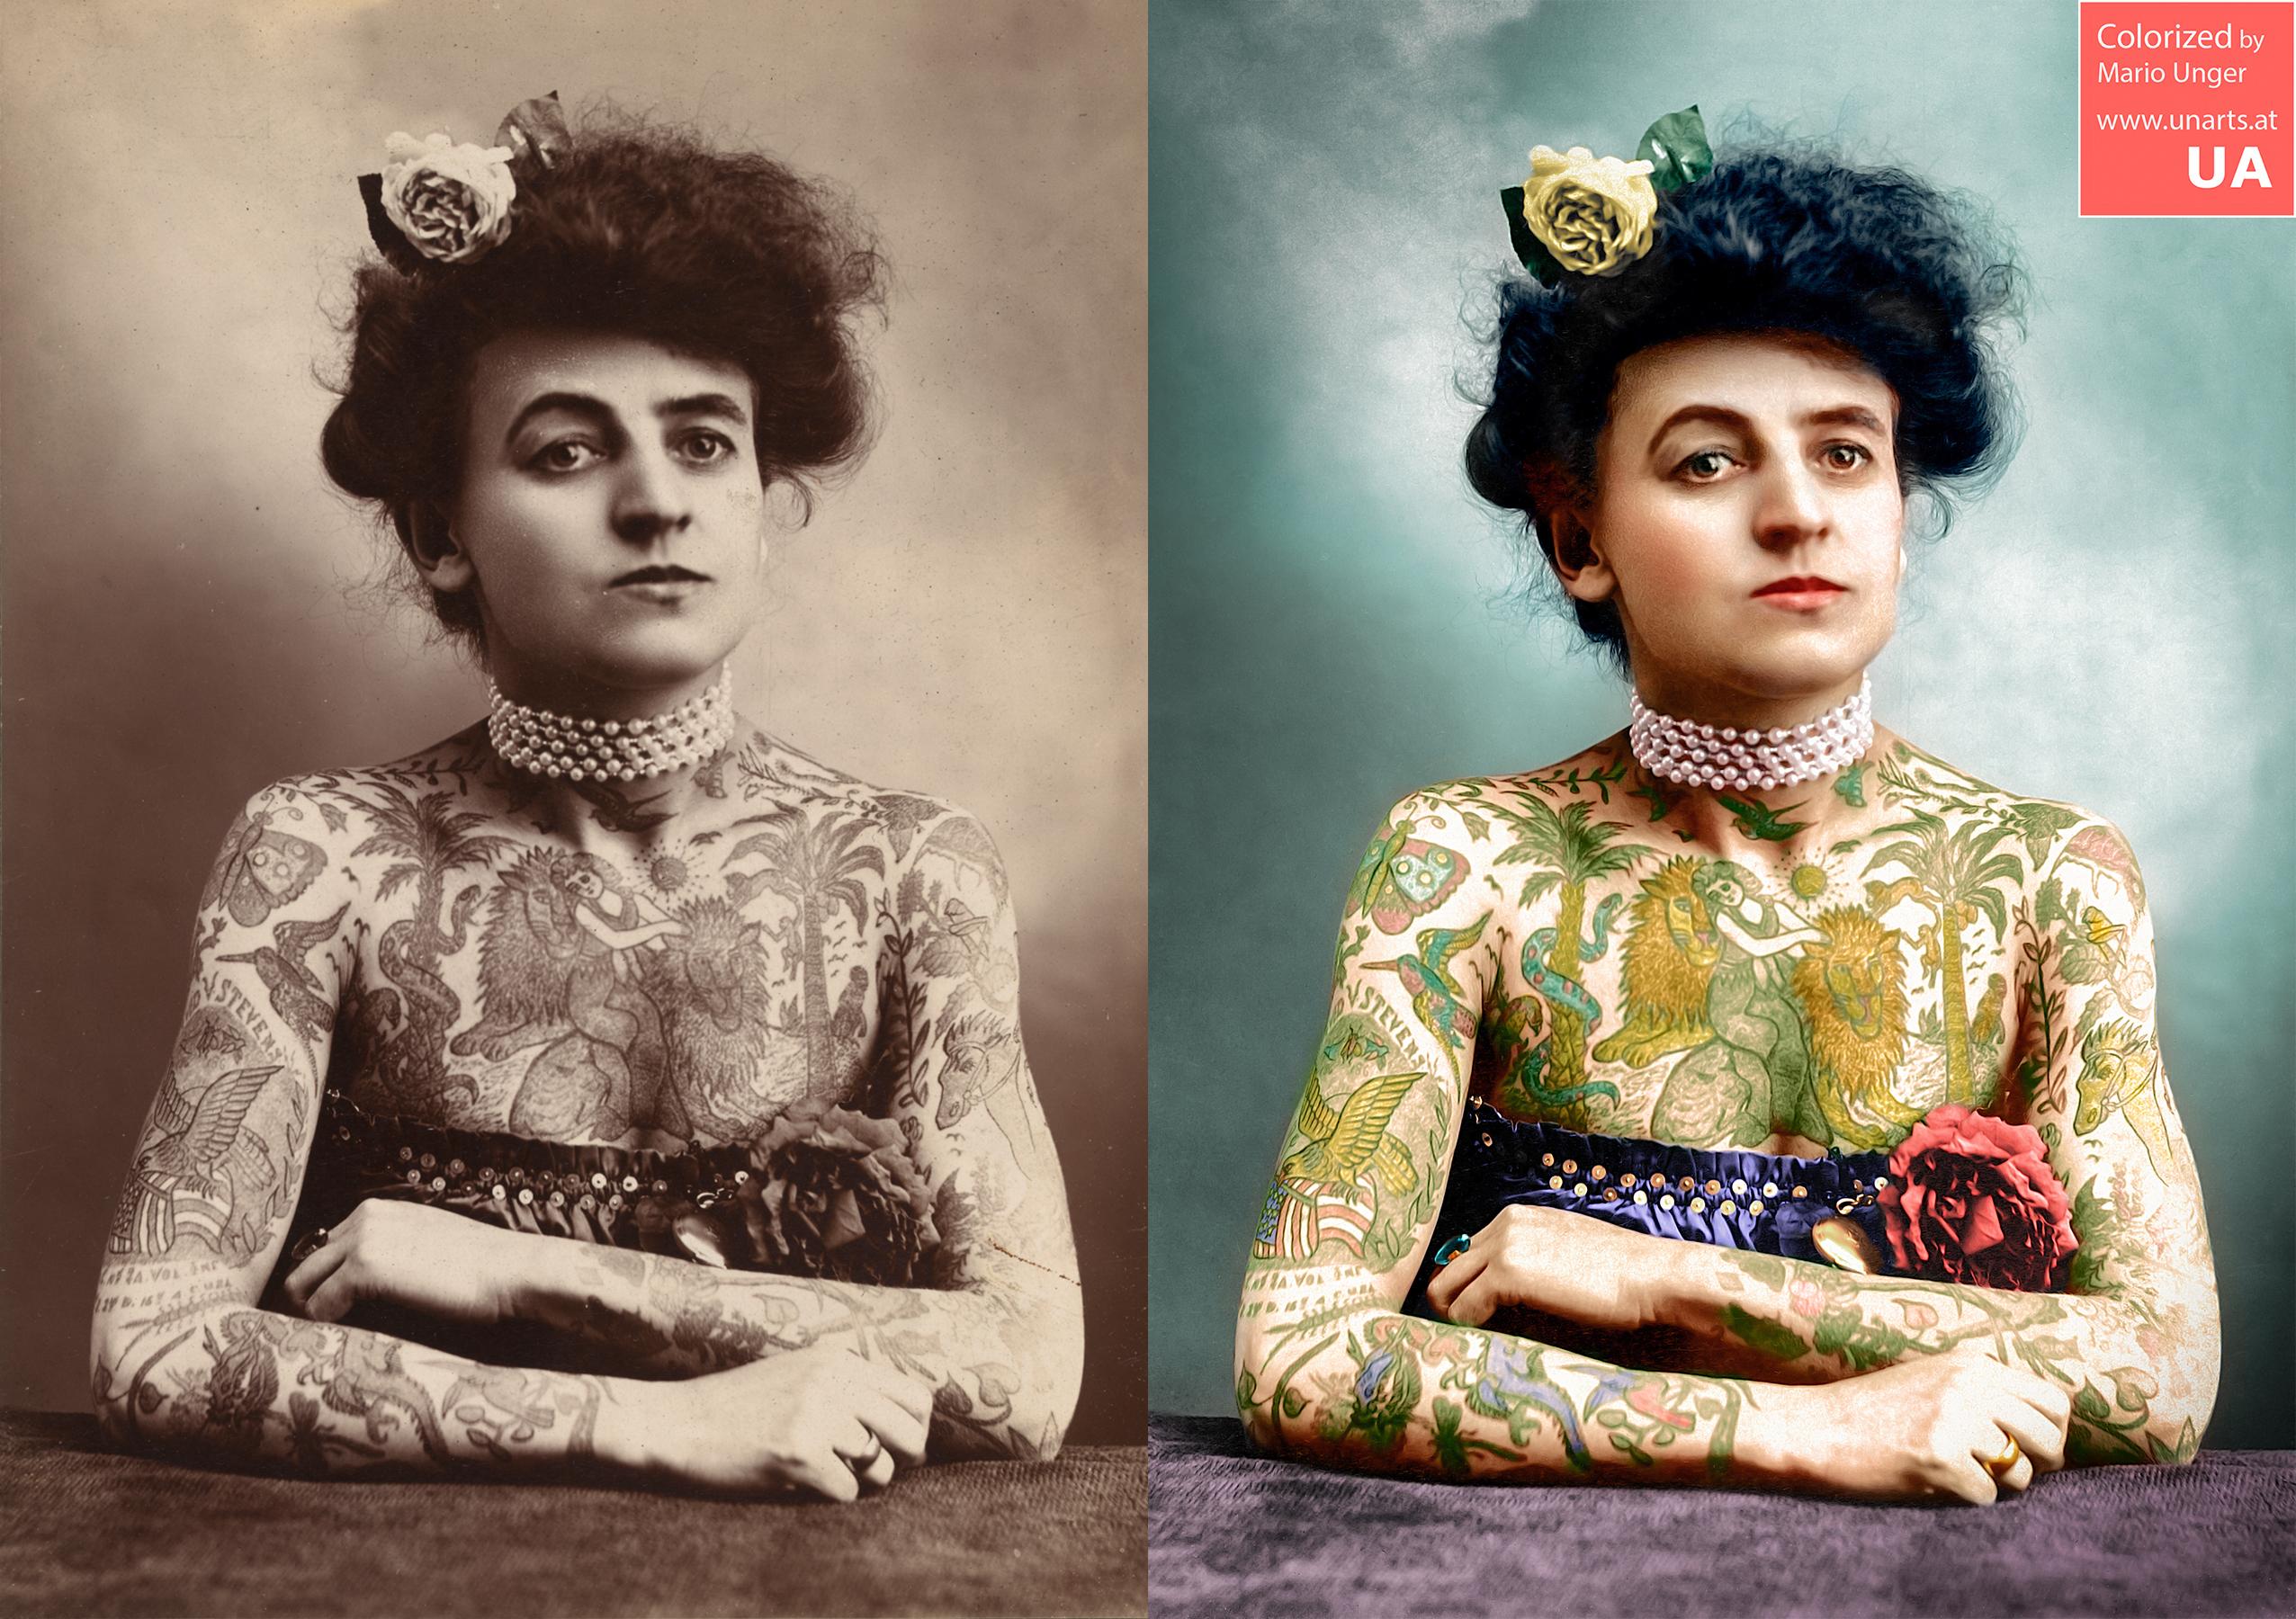 Colorize. Мод Вагнер. Старинные портреты татуированных женщин. Раскрашивание старых фотографий. Татуированные женщины 19 века.